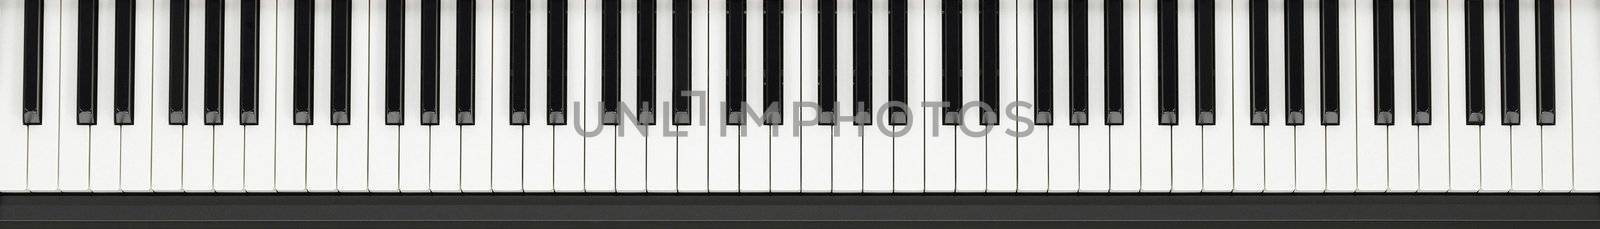 Piano Keyboard by ozaiachin